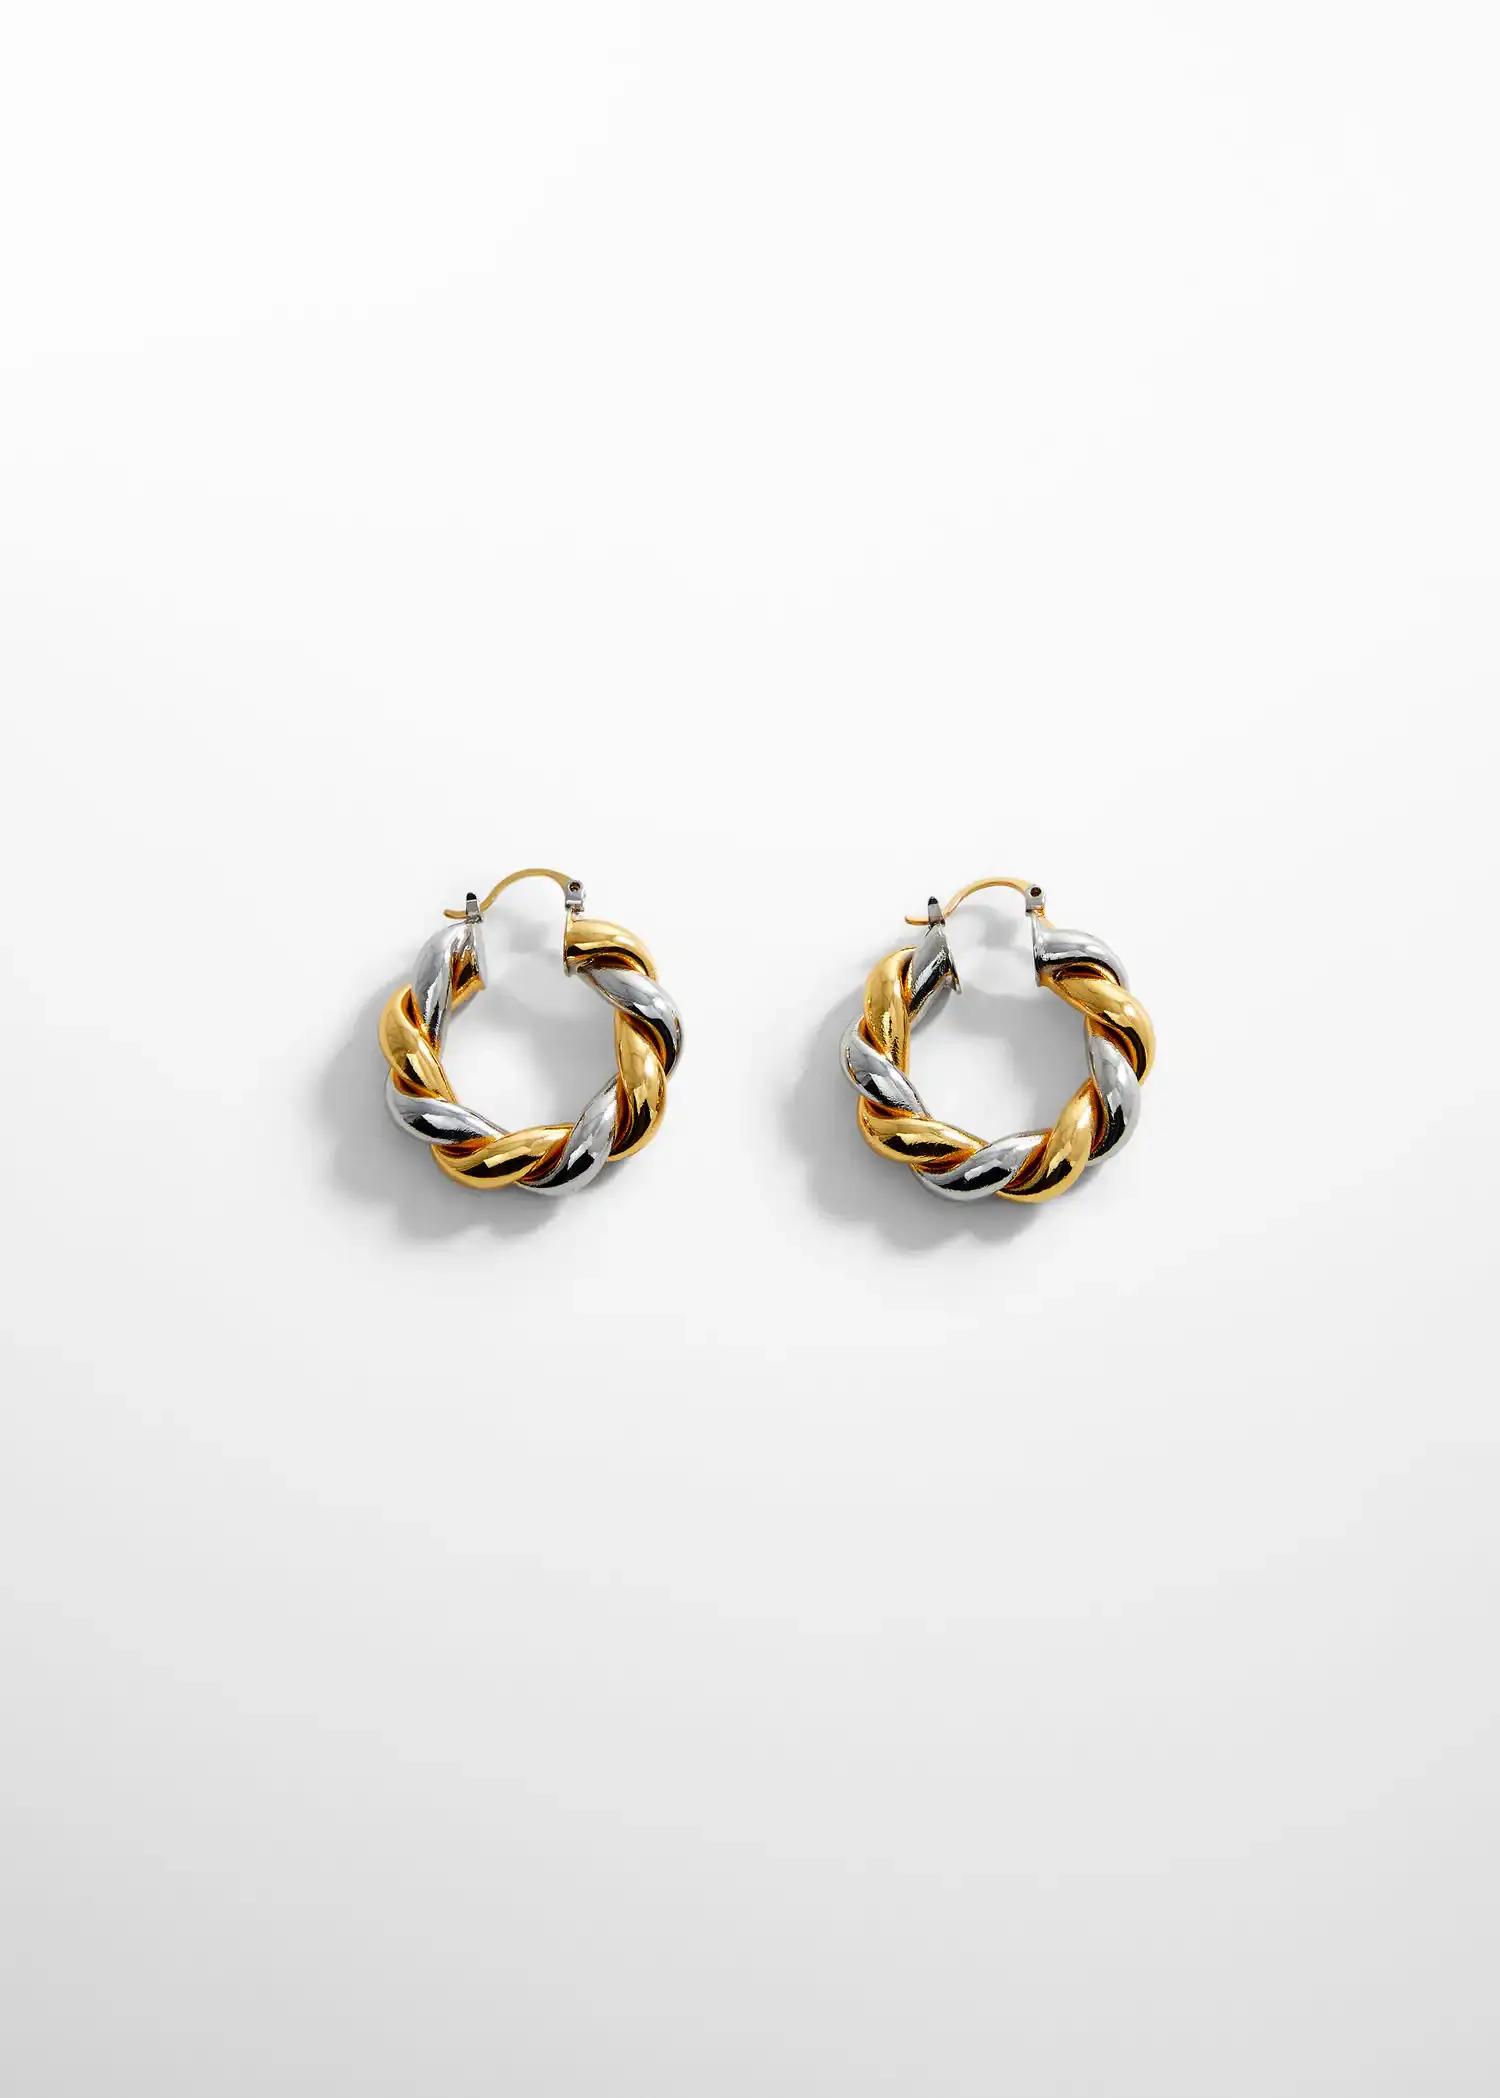 Mango Intertwined hoop earrings. a pair of gold and silver hoop earrings. 